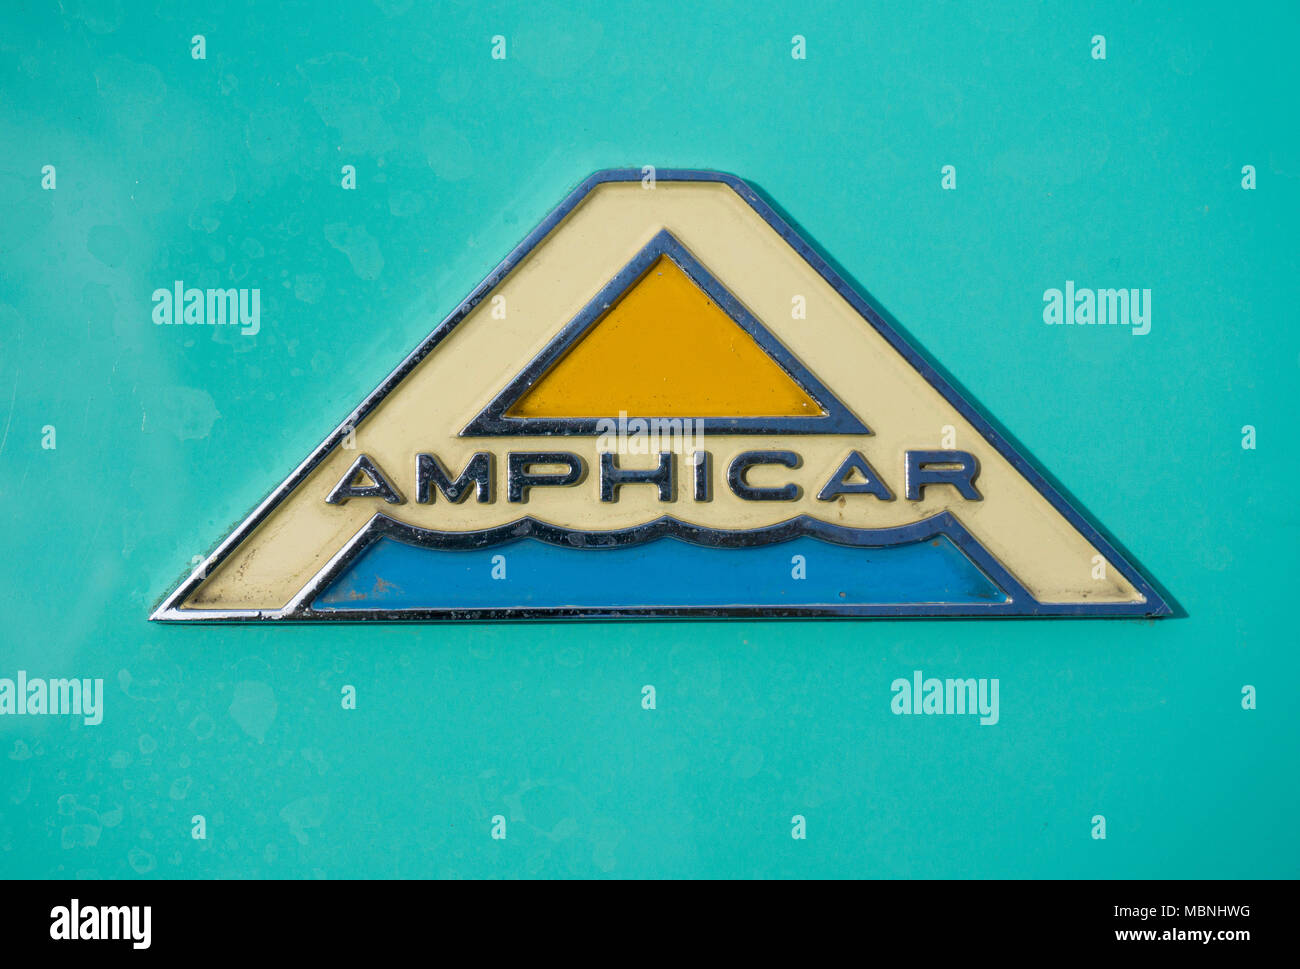 Le logo d'un véhicule amphibie Amphicar, exposition à Moselle, Neumagen-Dhron, Rhénanie-Palatinat, Allemagne Banque D'Images